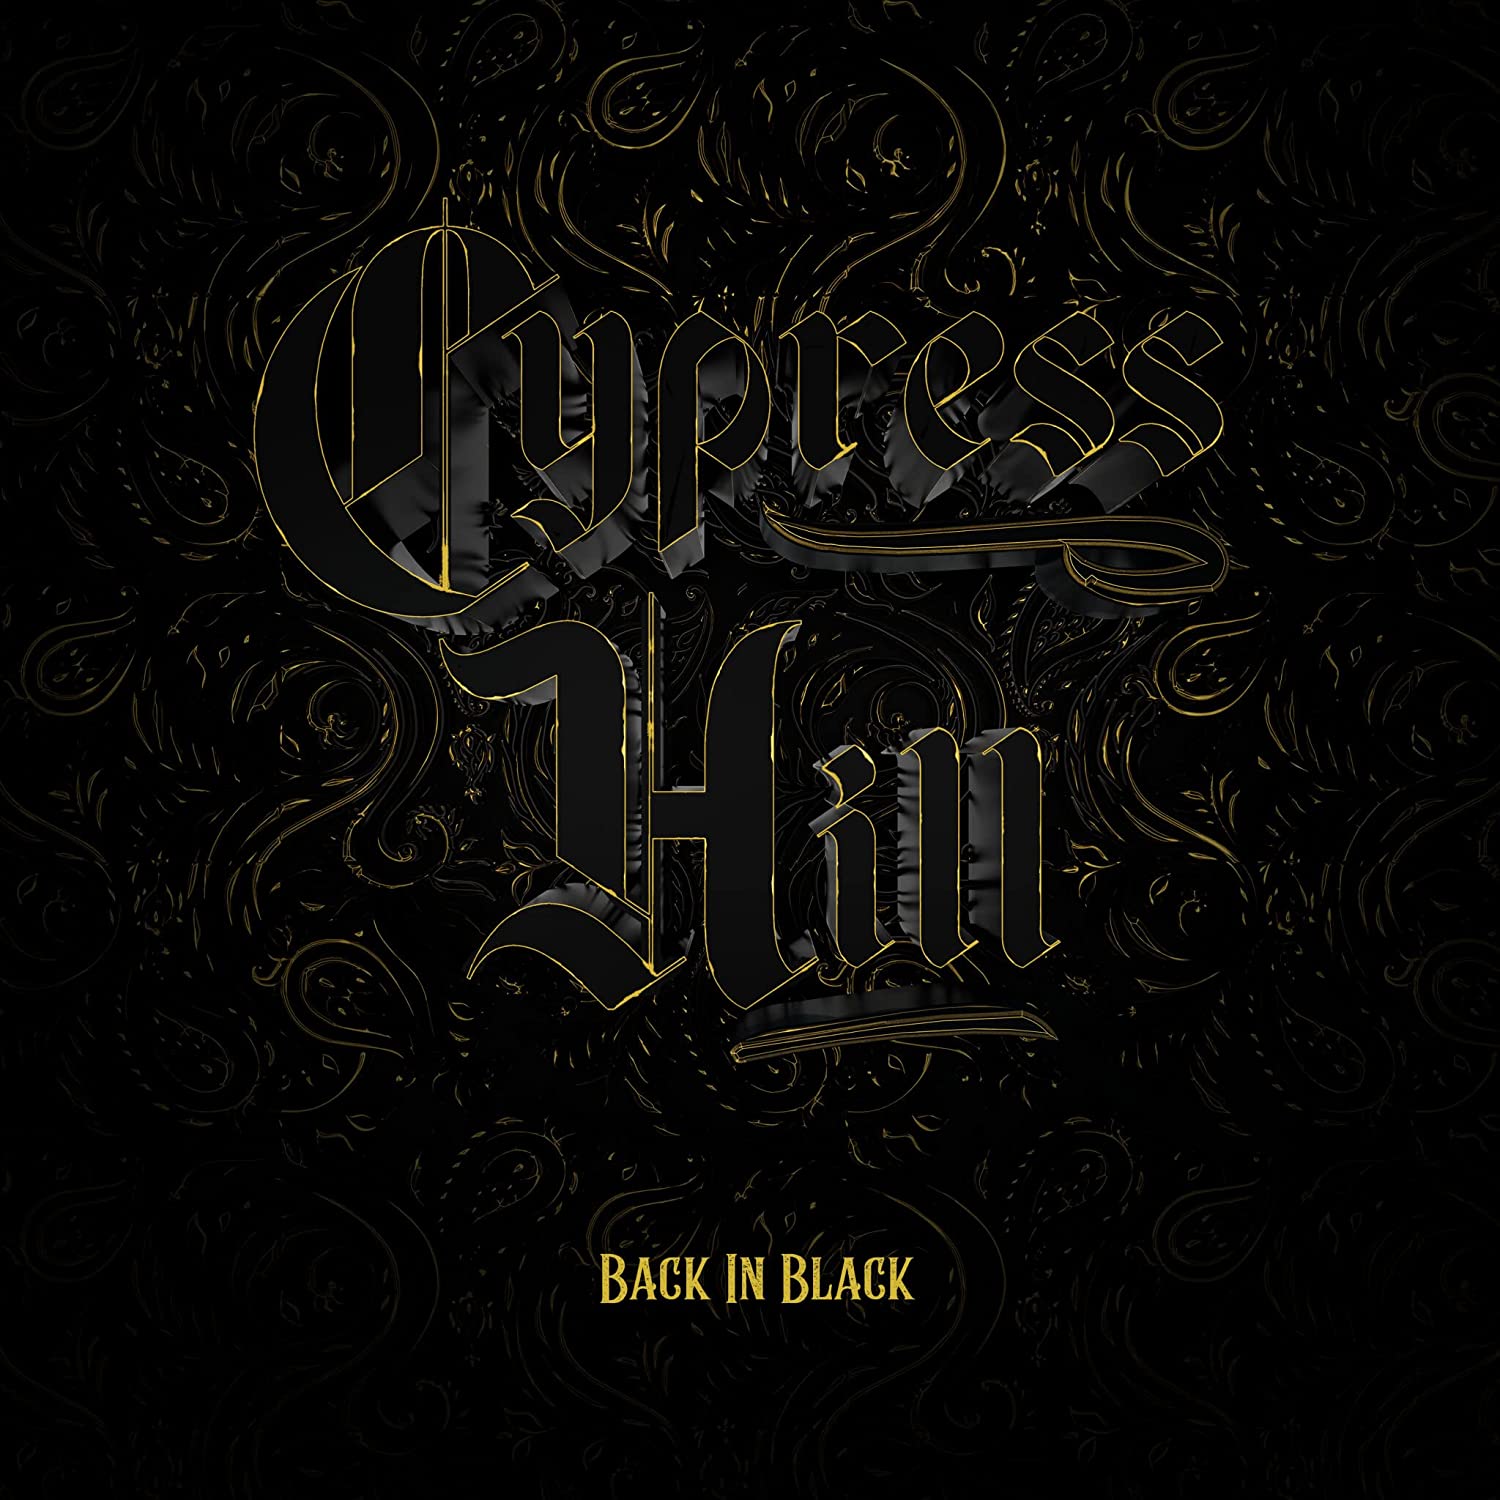 Copertina Vinile 33 giri Back In Black di Cypress Hill